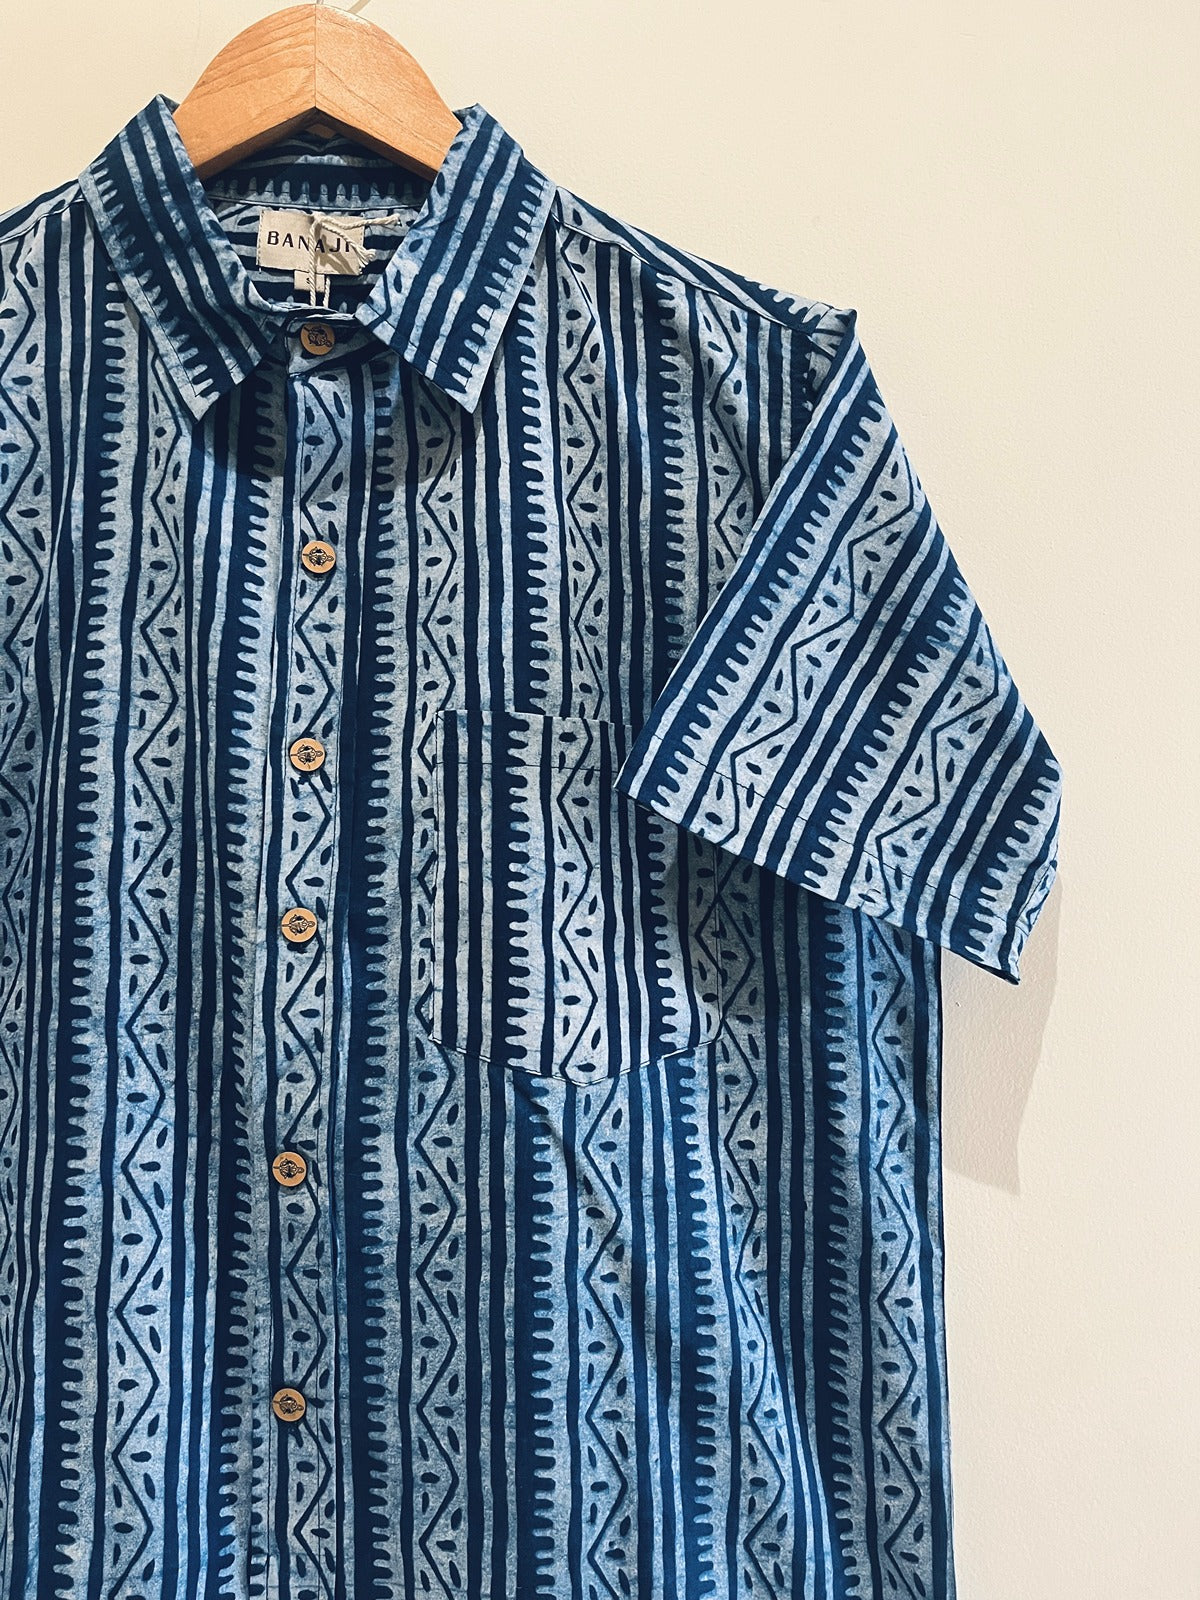 Natural Indigo Printed Half Sleeve Shirt